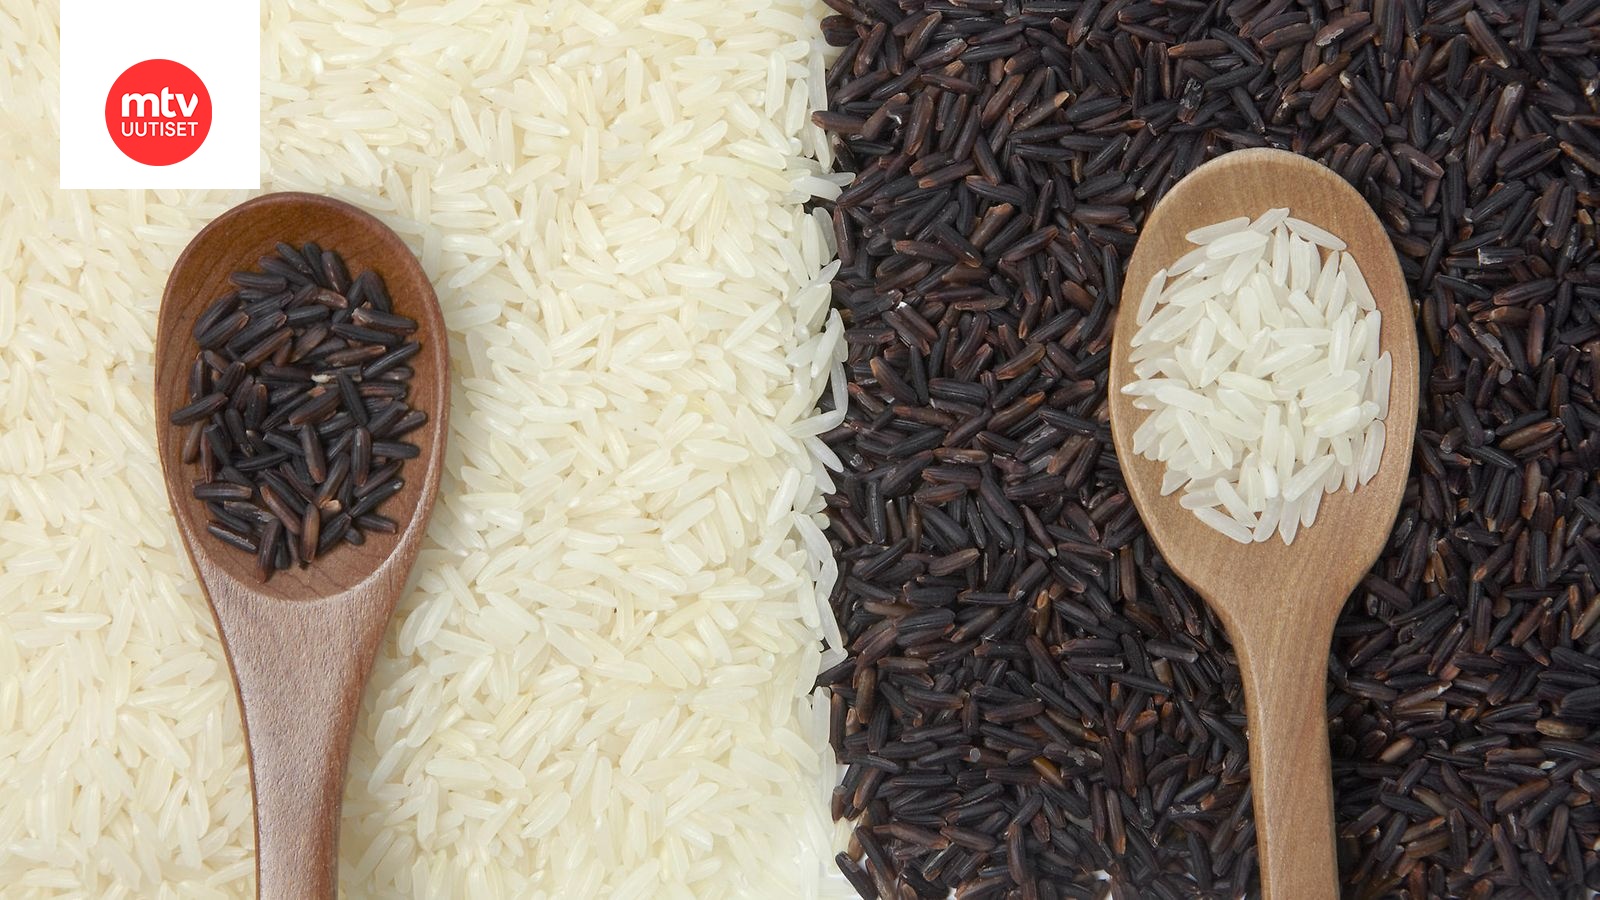 Tumma riisi ei ehkä sittenkään ole valkoista parempi vaihtoehto – kumpaa  kannattaa syödä? | Makuja | MTV Uutiset